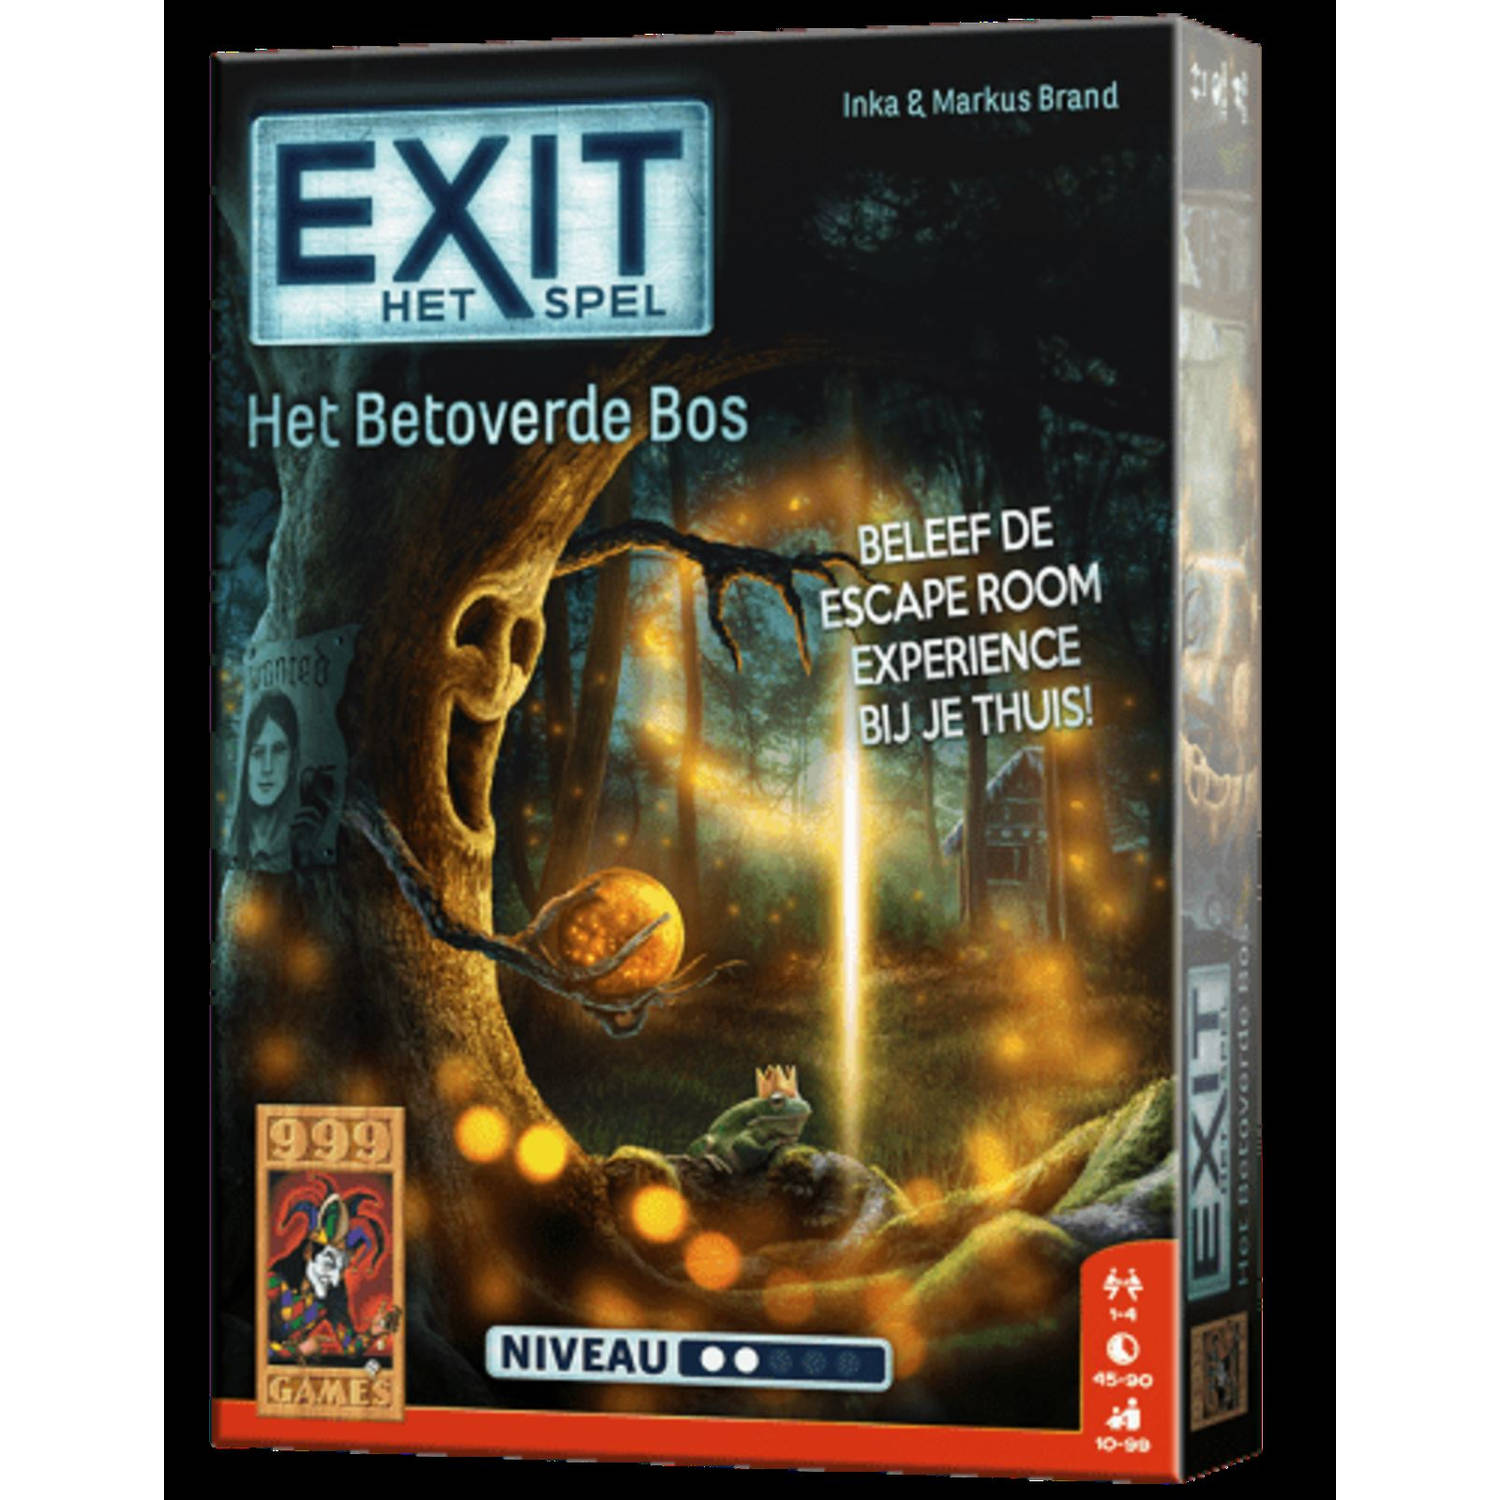 999 Games Exit spel het betoverende bos 18 x 13 x 4 cm